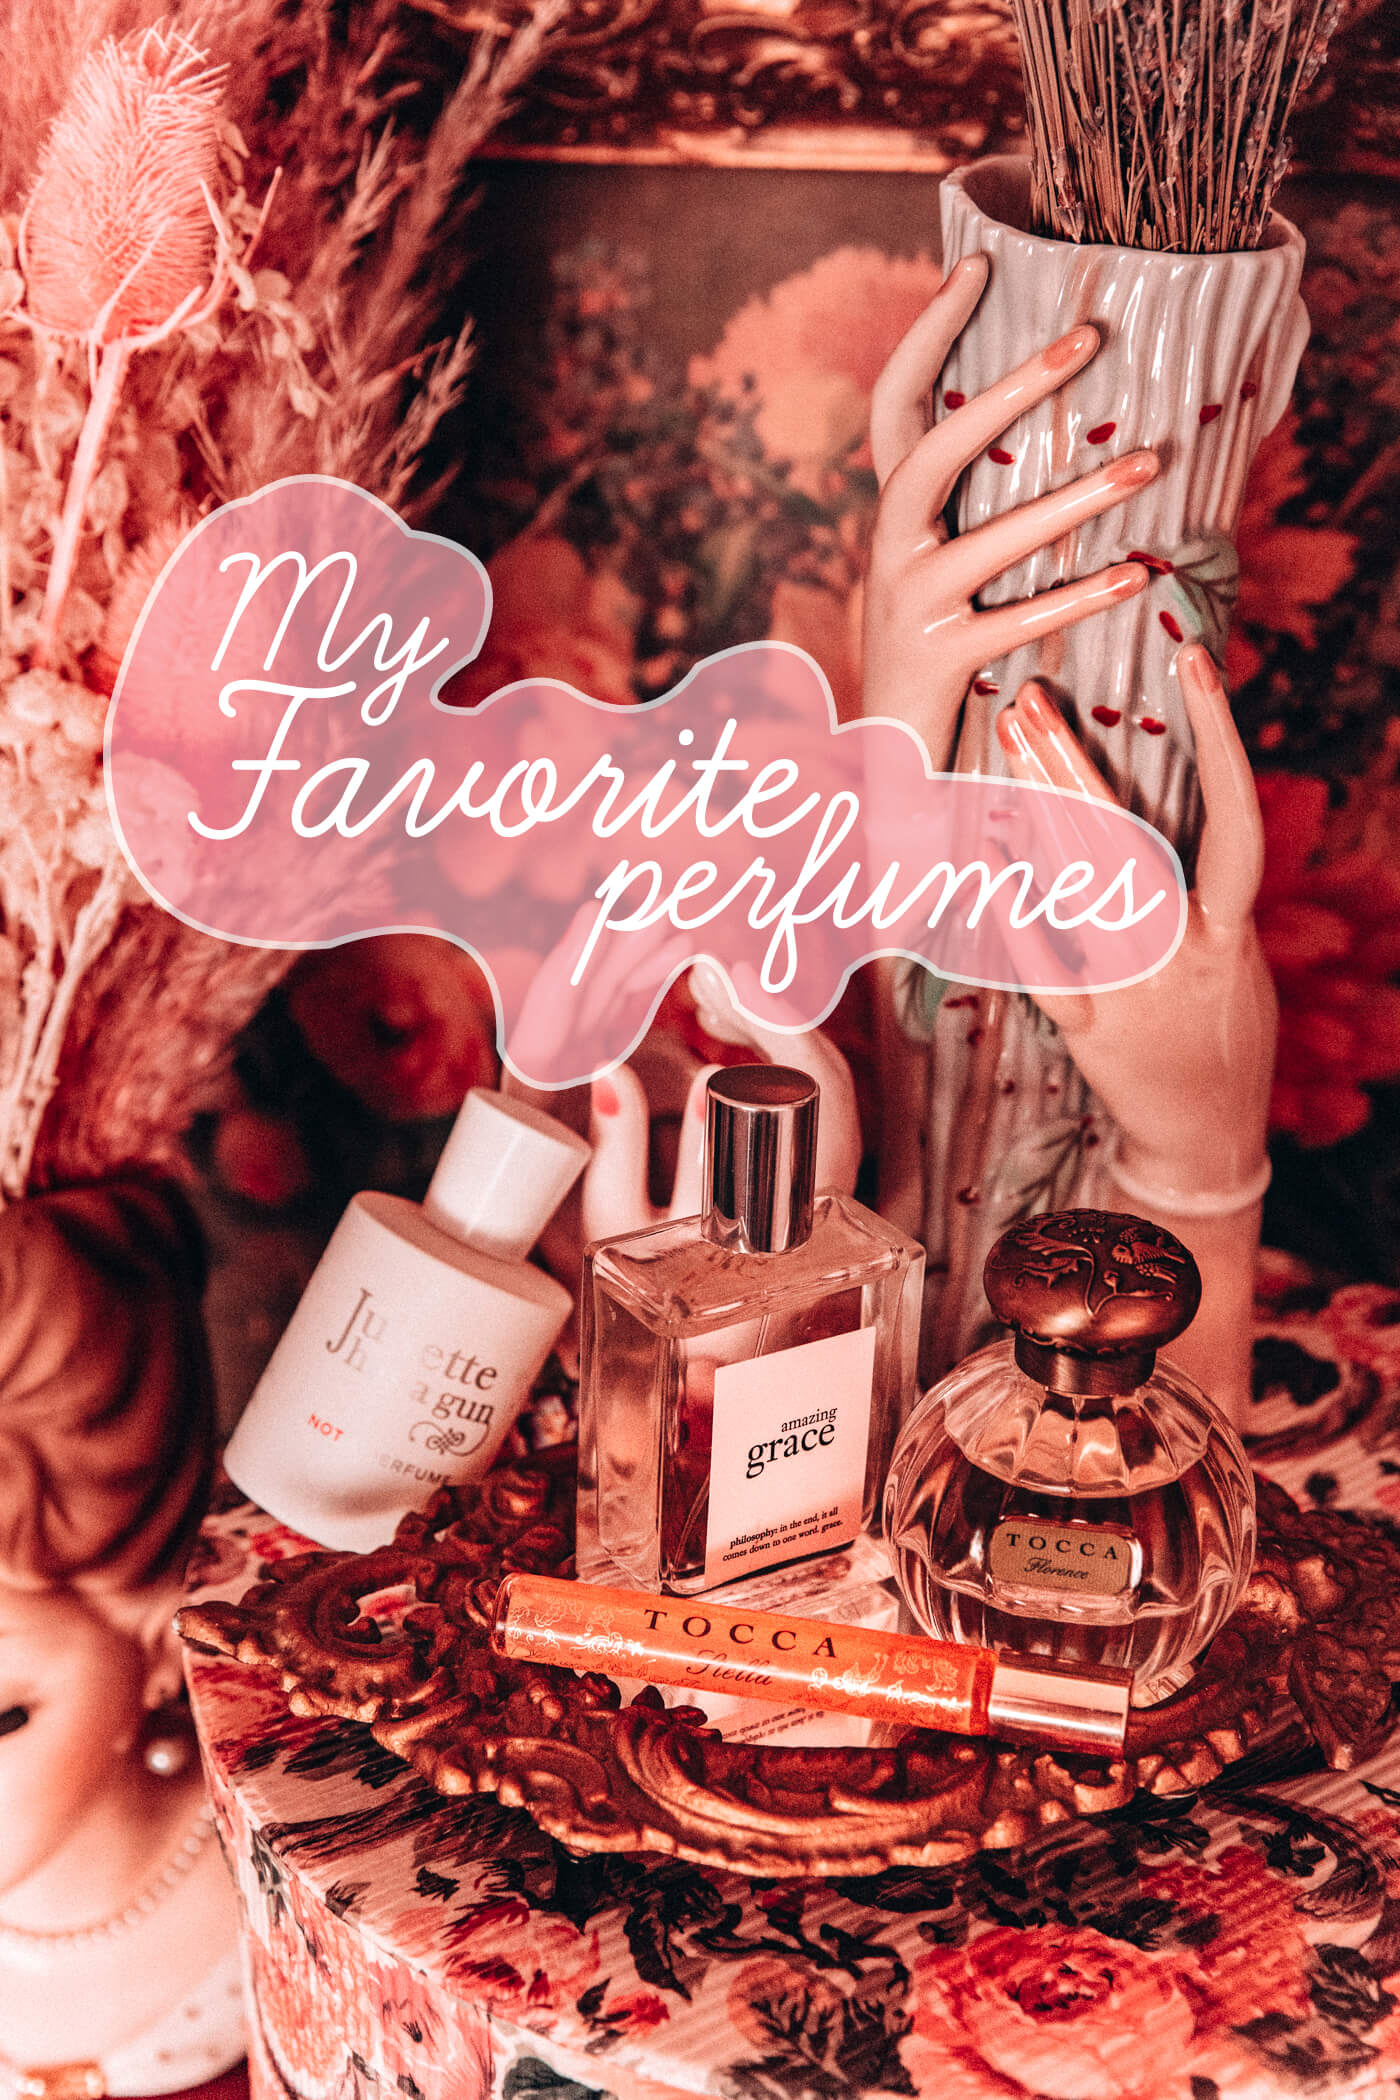 keiko lynn's favorite perfumes